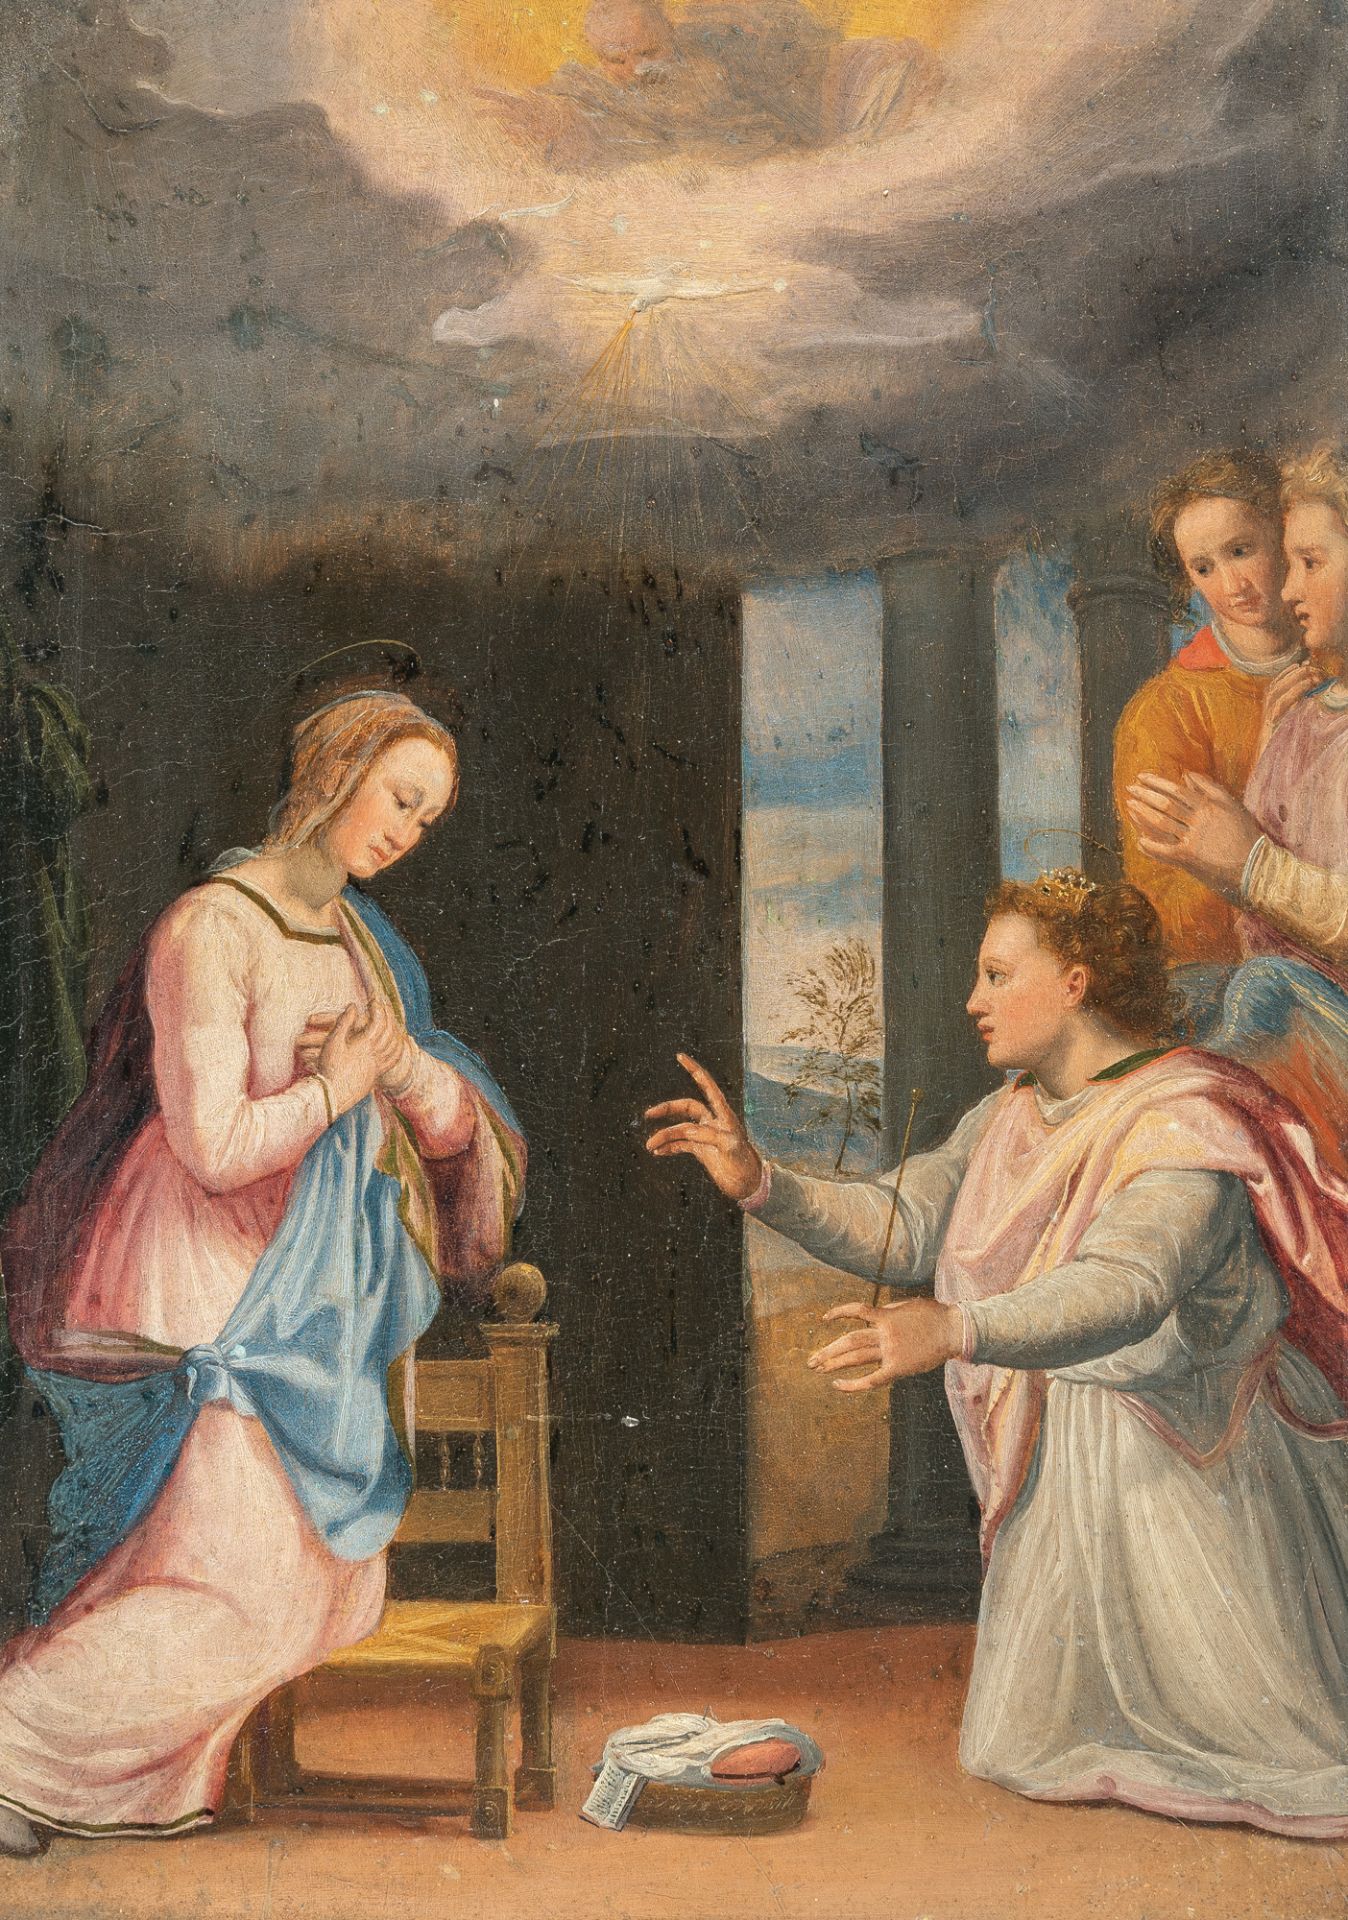 Santi di Tito und Werkstatt – The Annunciation